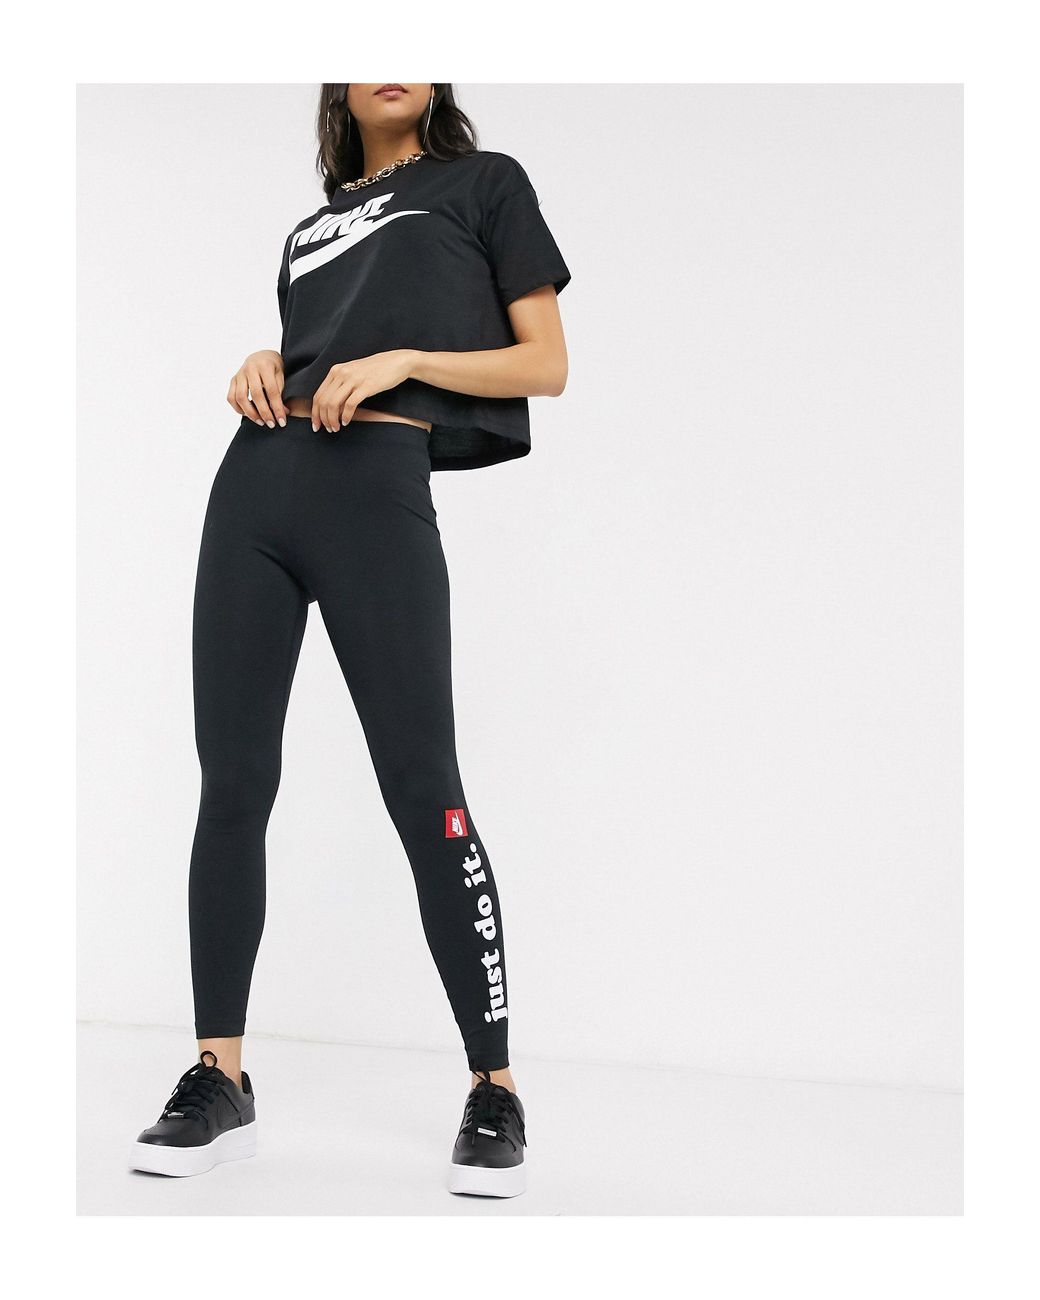 Nike – Just Do It – Leggings in Schwarz | Lyst DE